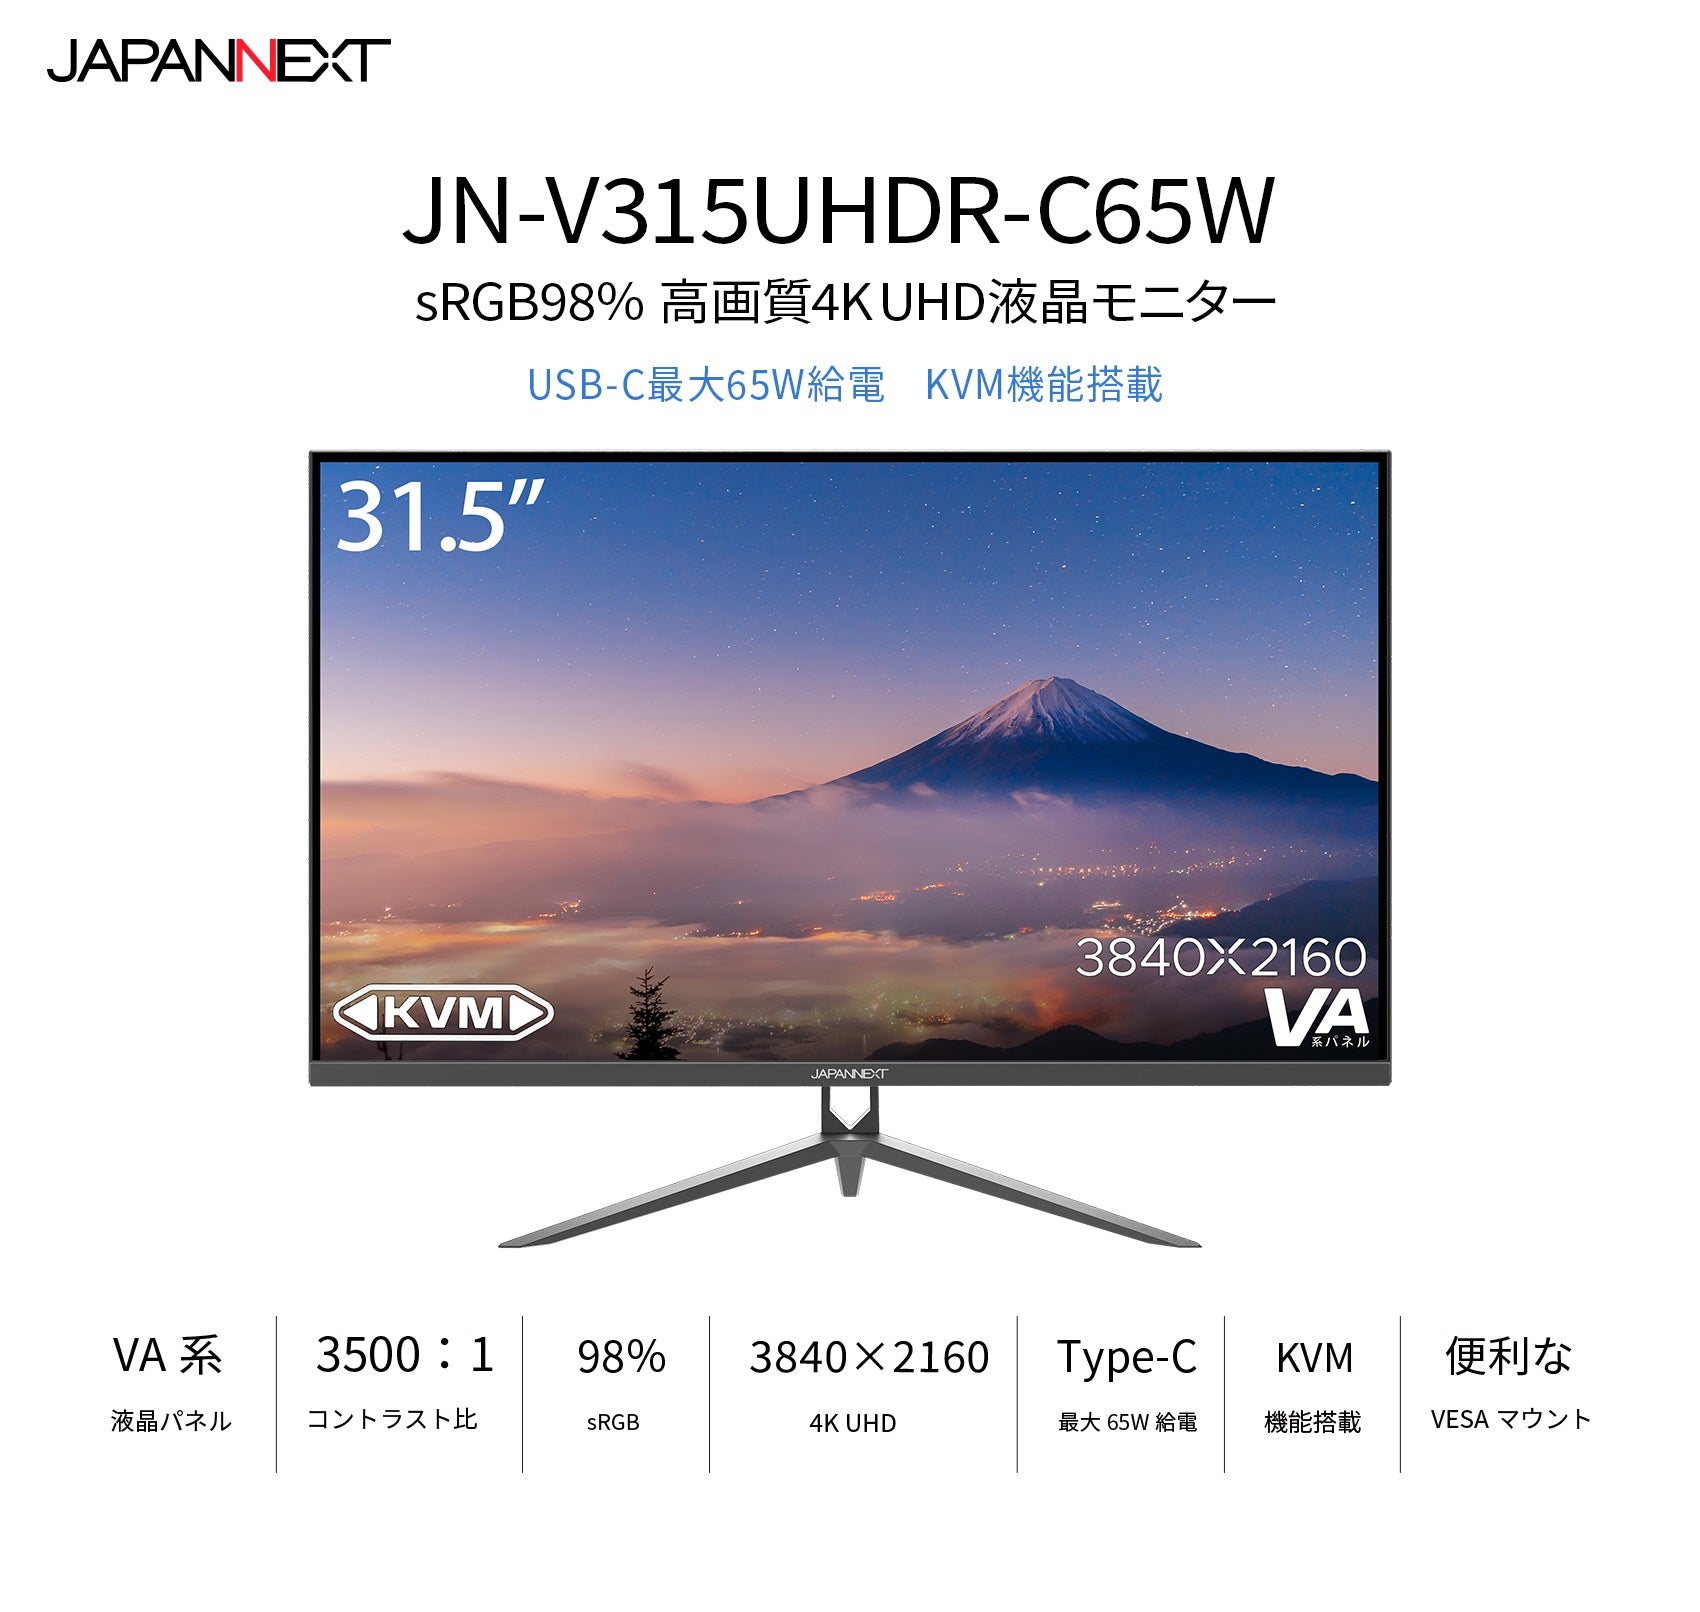 JN-V315UHDR-C65W